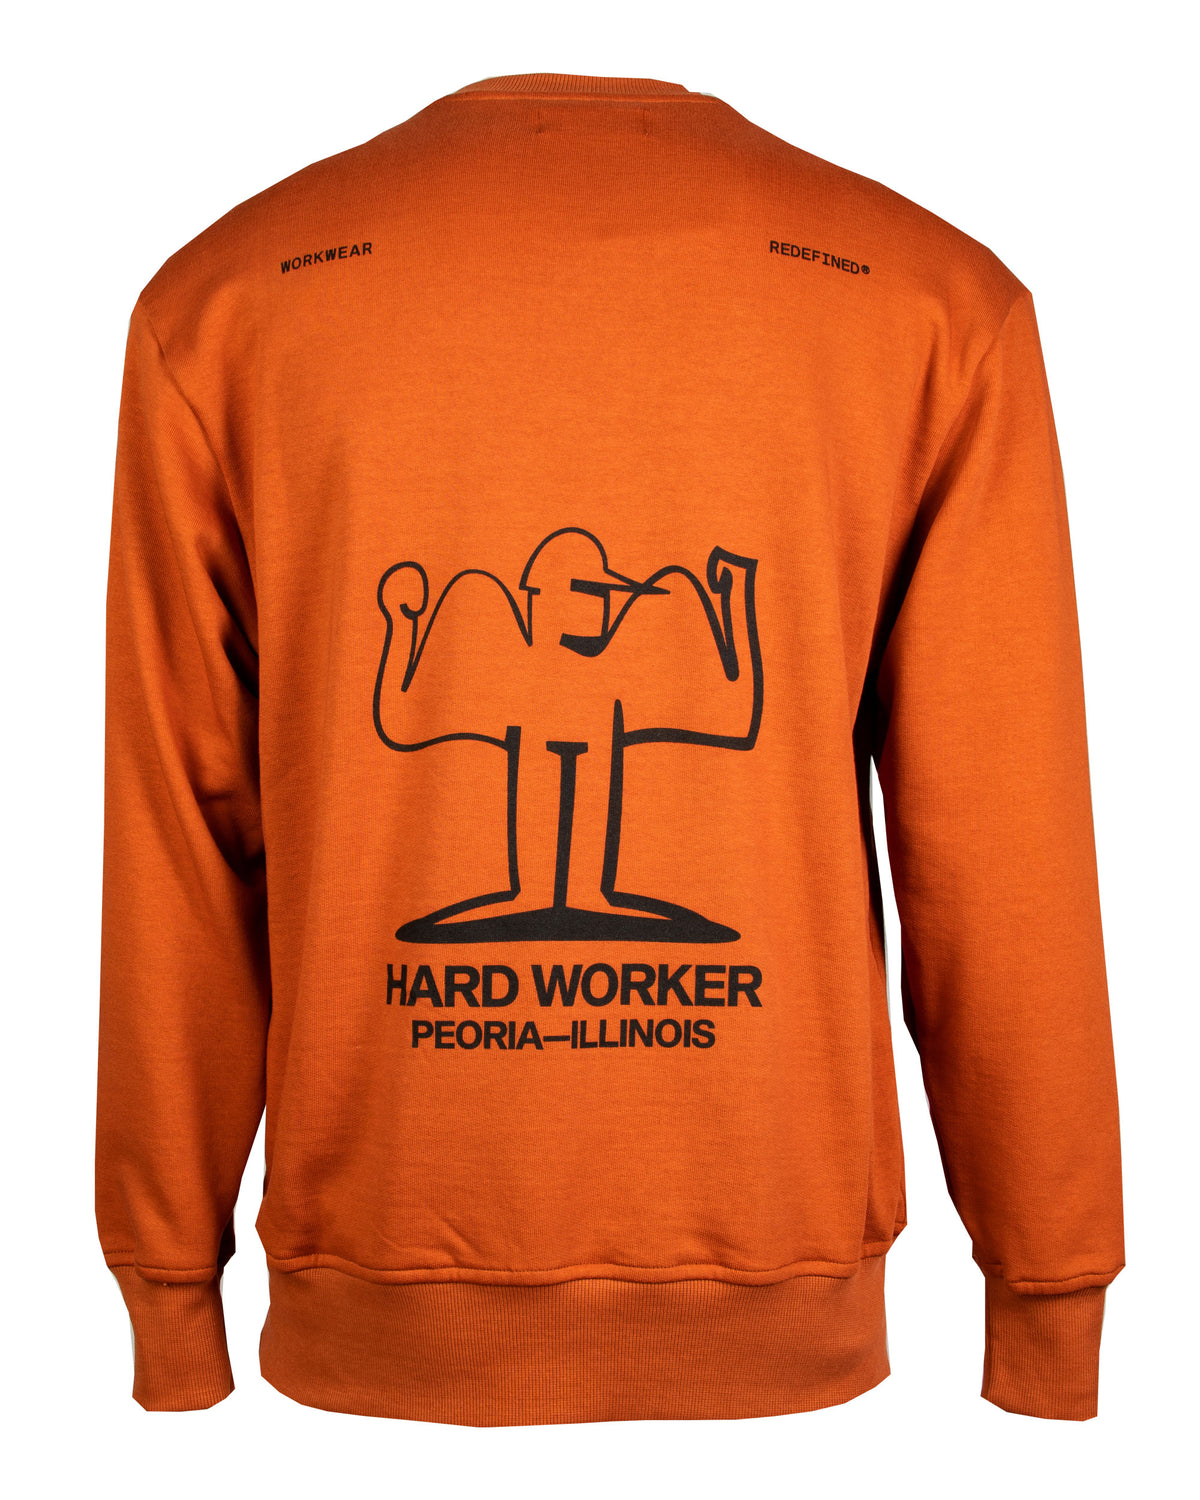 Man Cat Wwr Muscles Sweatshirt Orange